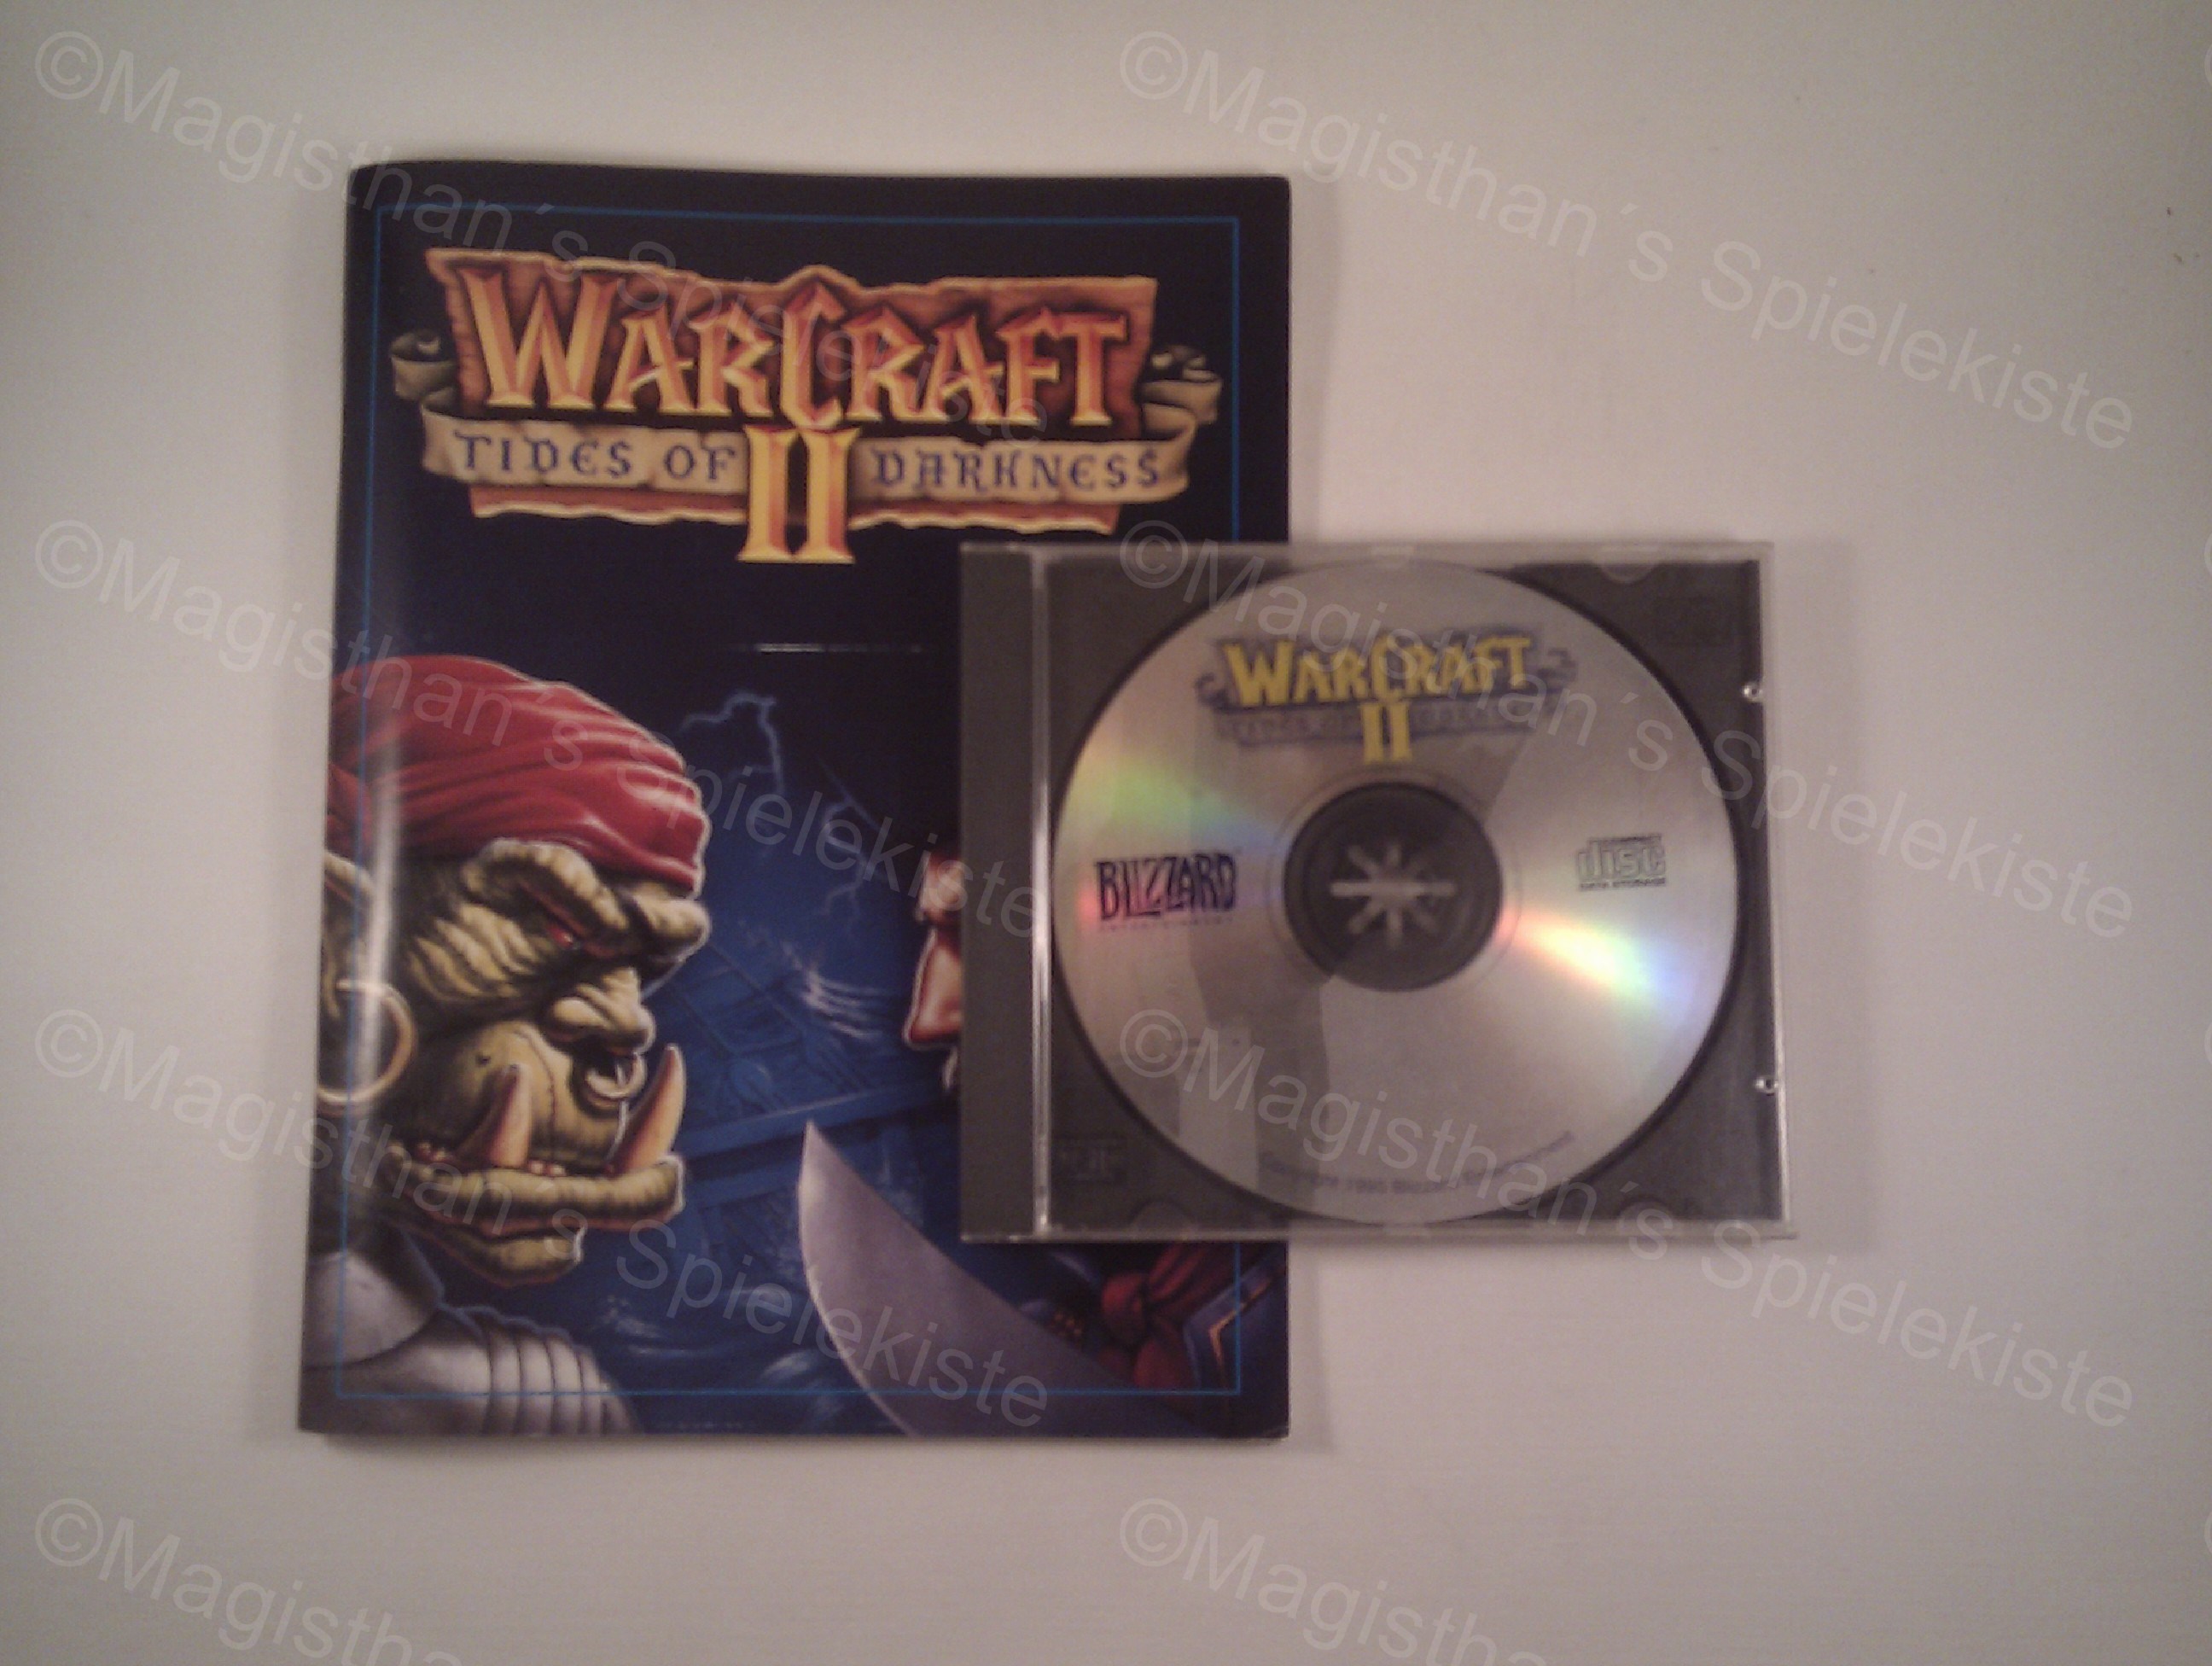 Warcraft2TidesDarkness2.jpg